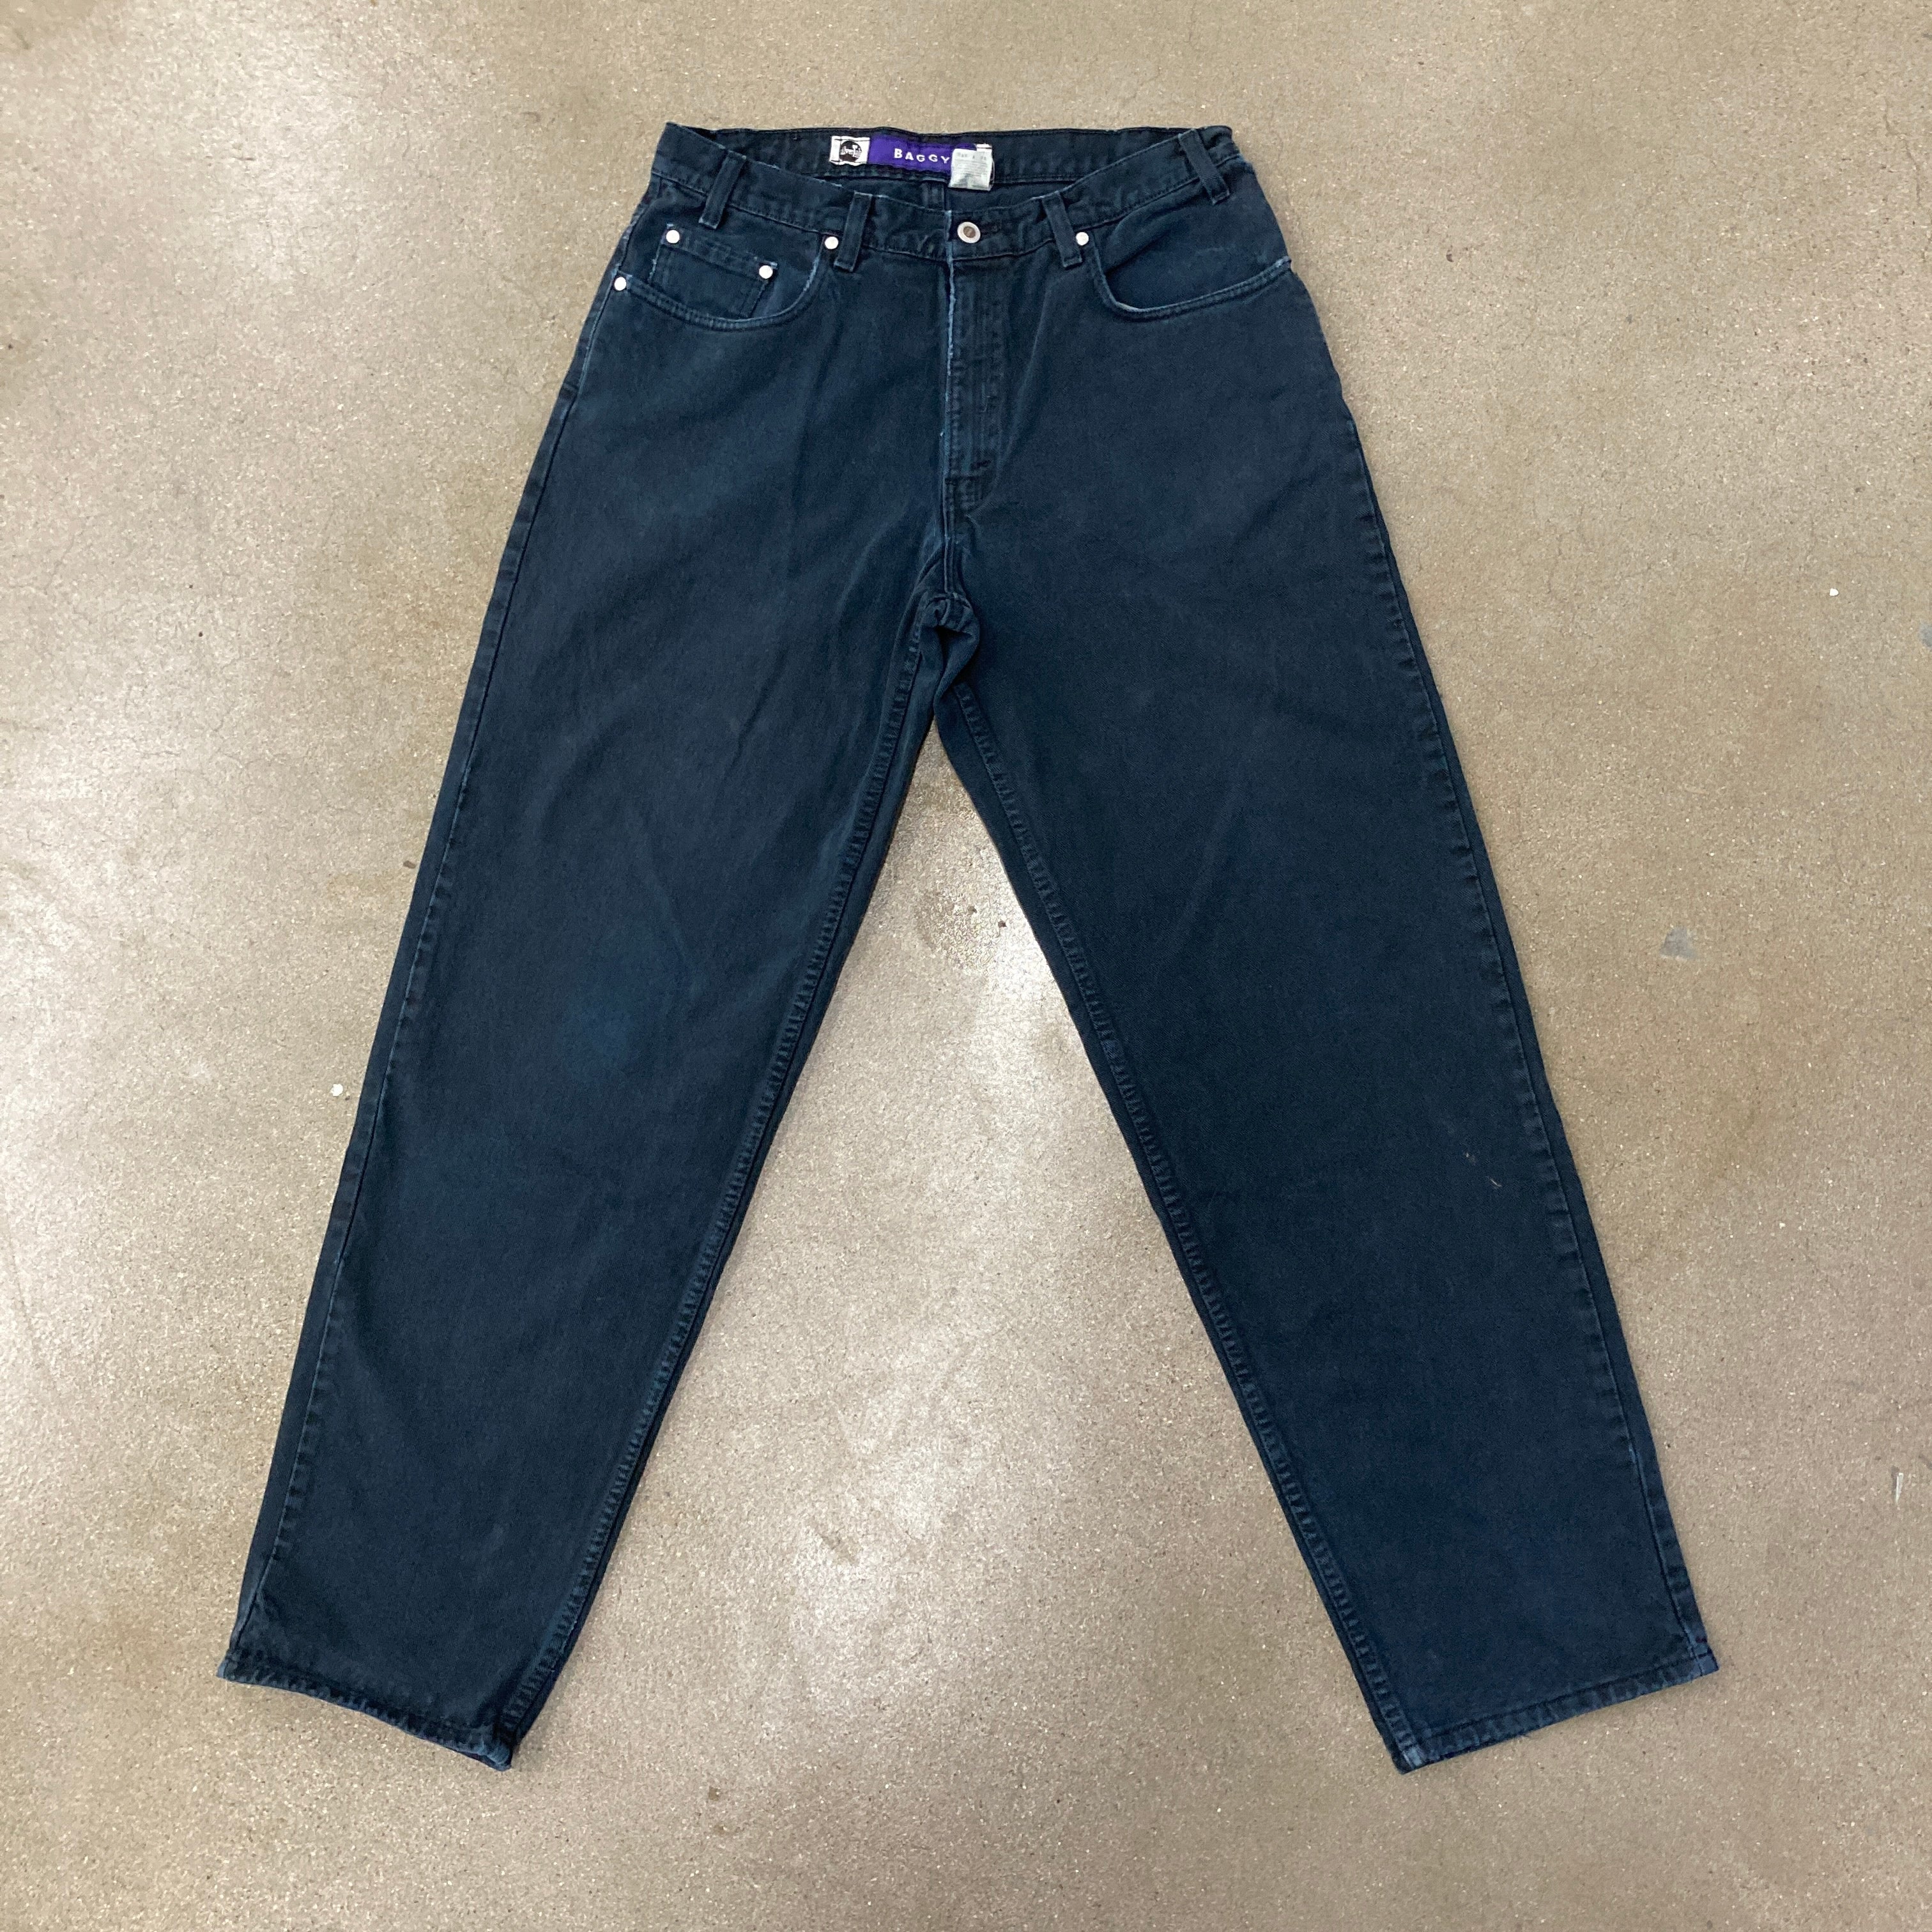 Silver Tab Baggy Jeans des années 1990 32 x 34 Levi dans un bleu nuit/noir Wash